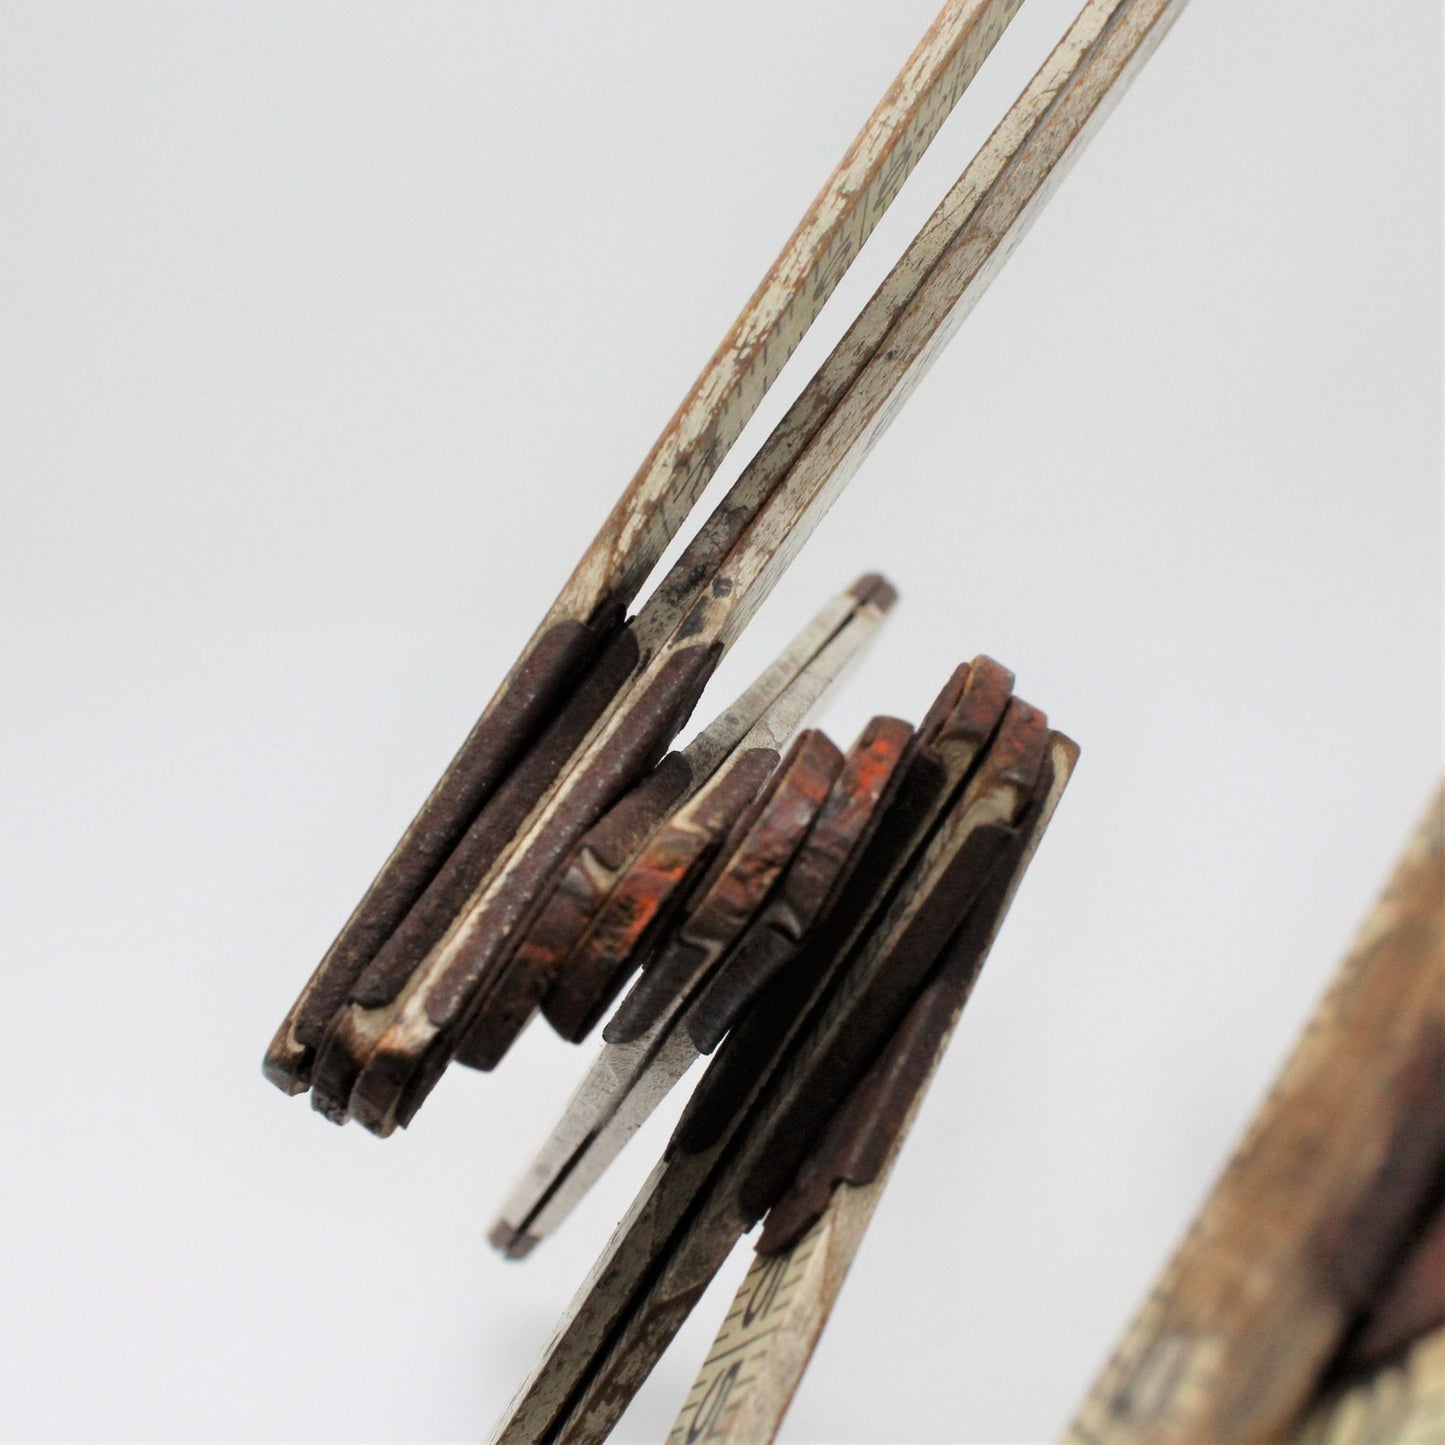 Carpenter Wood Folding Ruler, Revere, Vintage Primitive